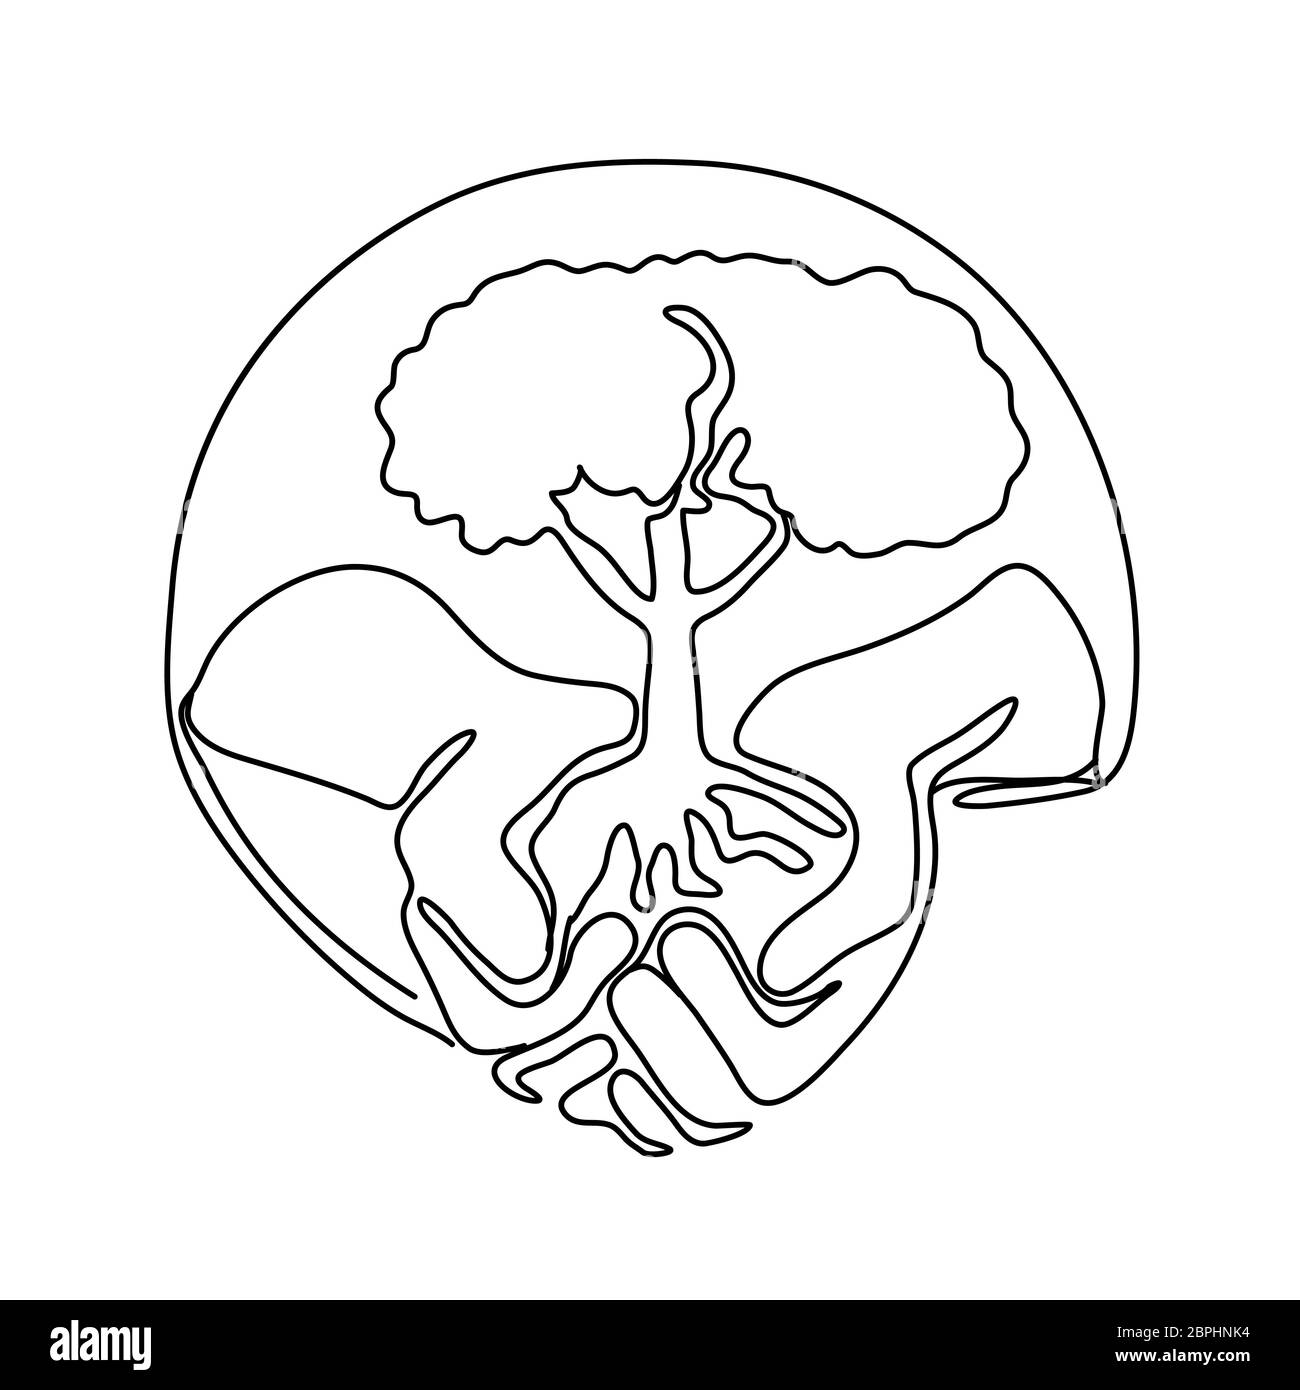 Linea continua illustrazione di una mano che regge un albero sul palmo della mano imposta all'interno di forma ovale realizzato in stile monolinea in bianco e nero. Foto Stock